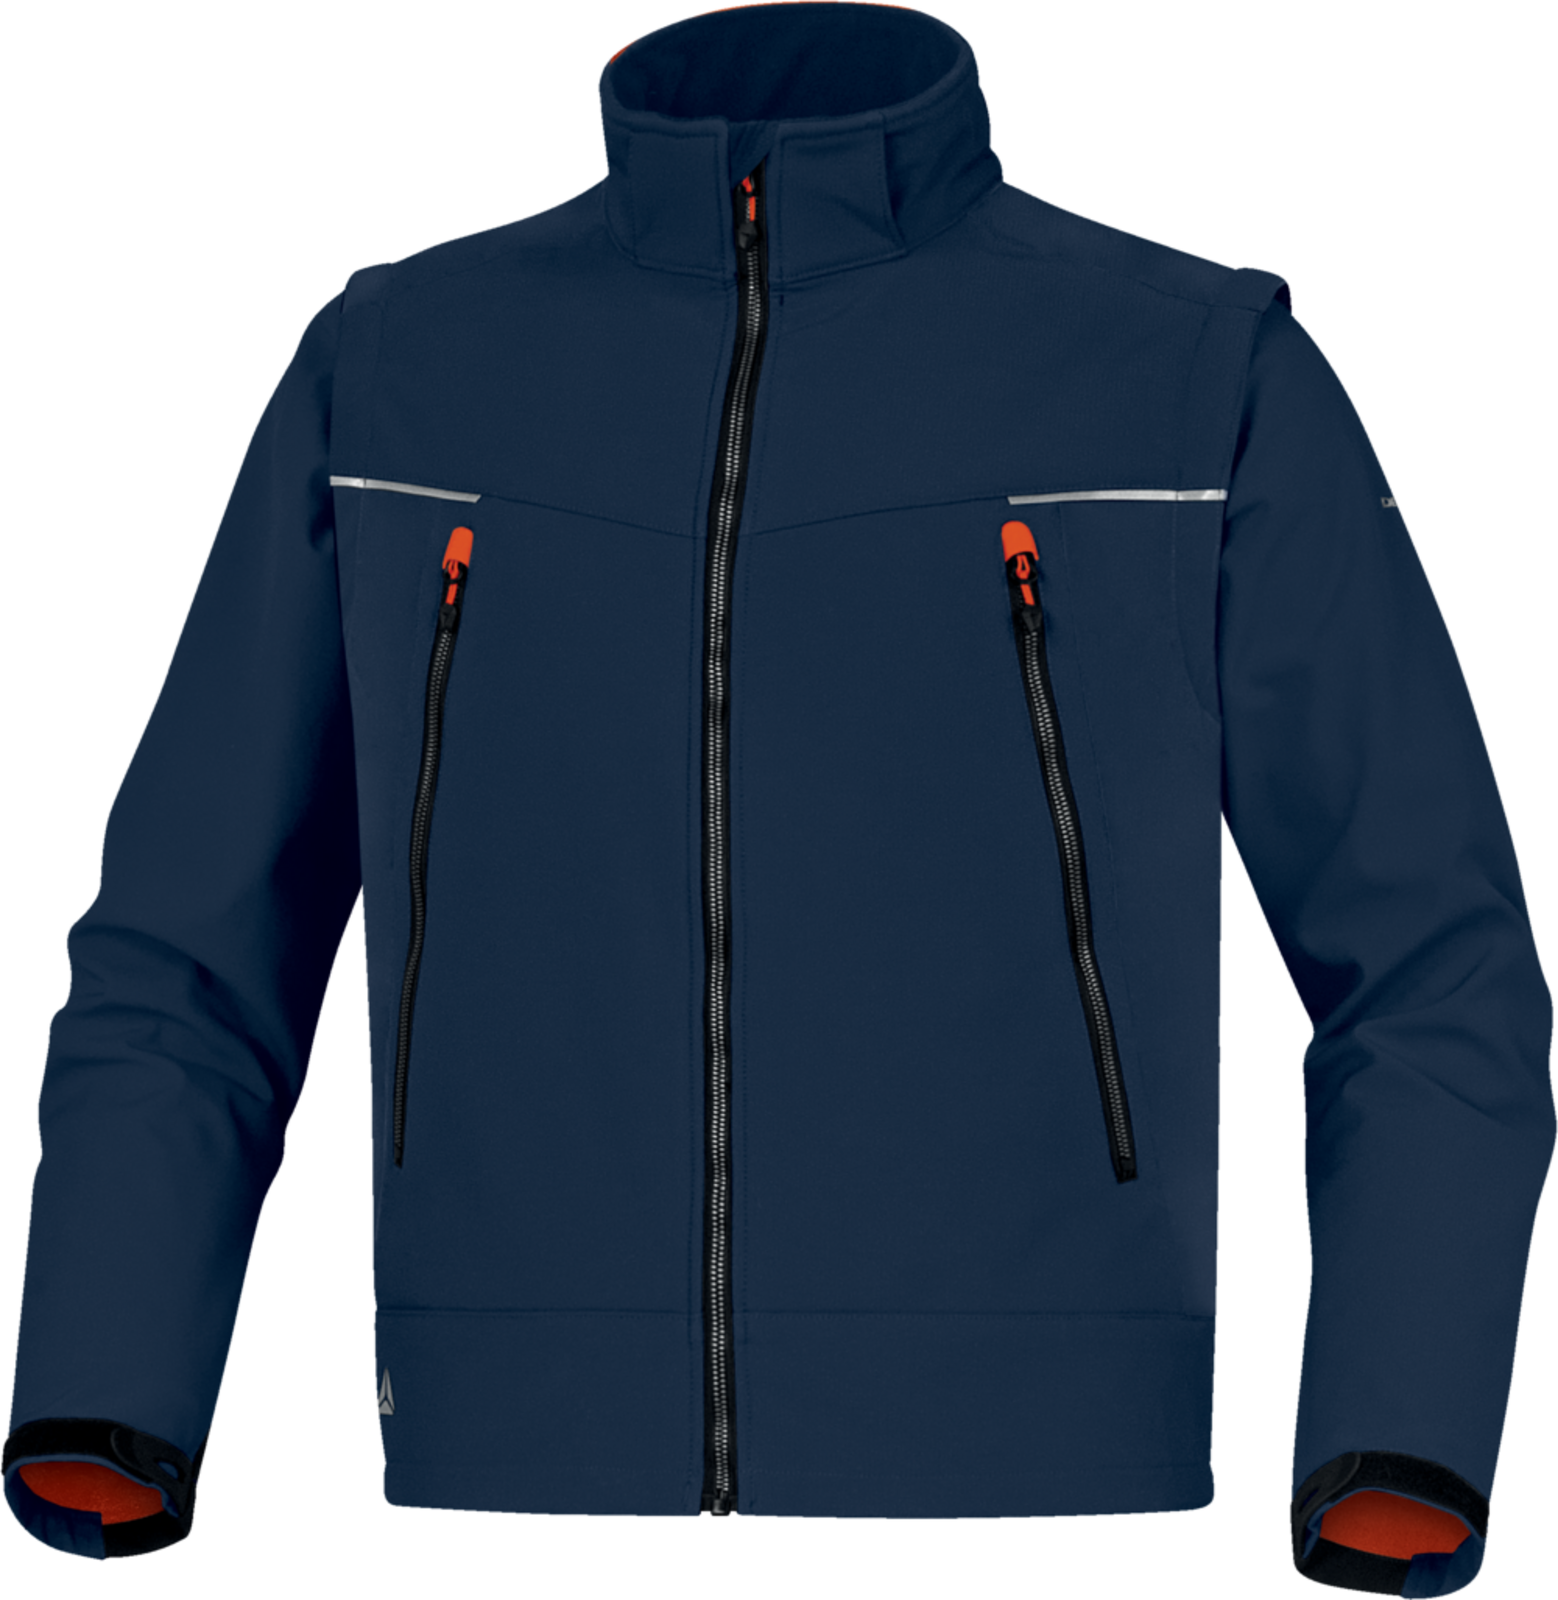 Softshellová bunda Delta Plus Orsa 2v1 - veľkosť: 3XL, farba: námornícka modrá/oranžová